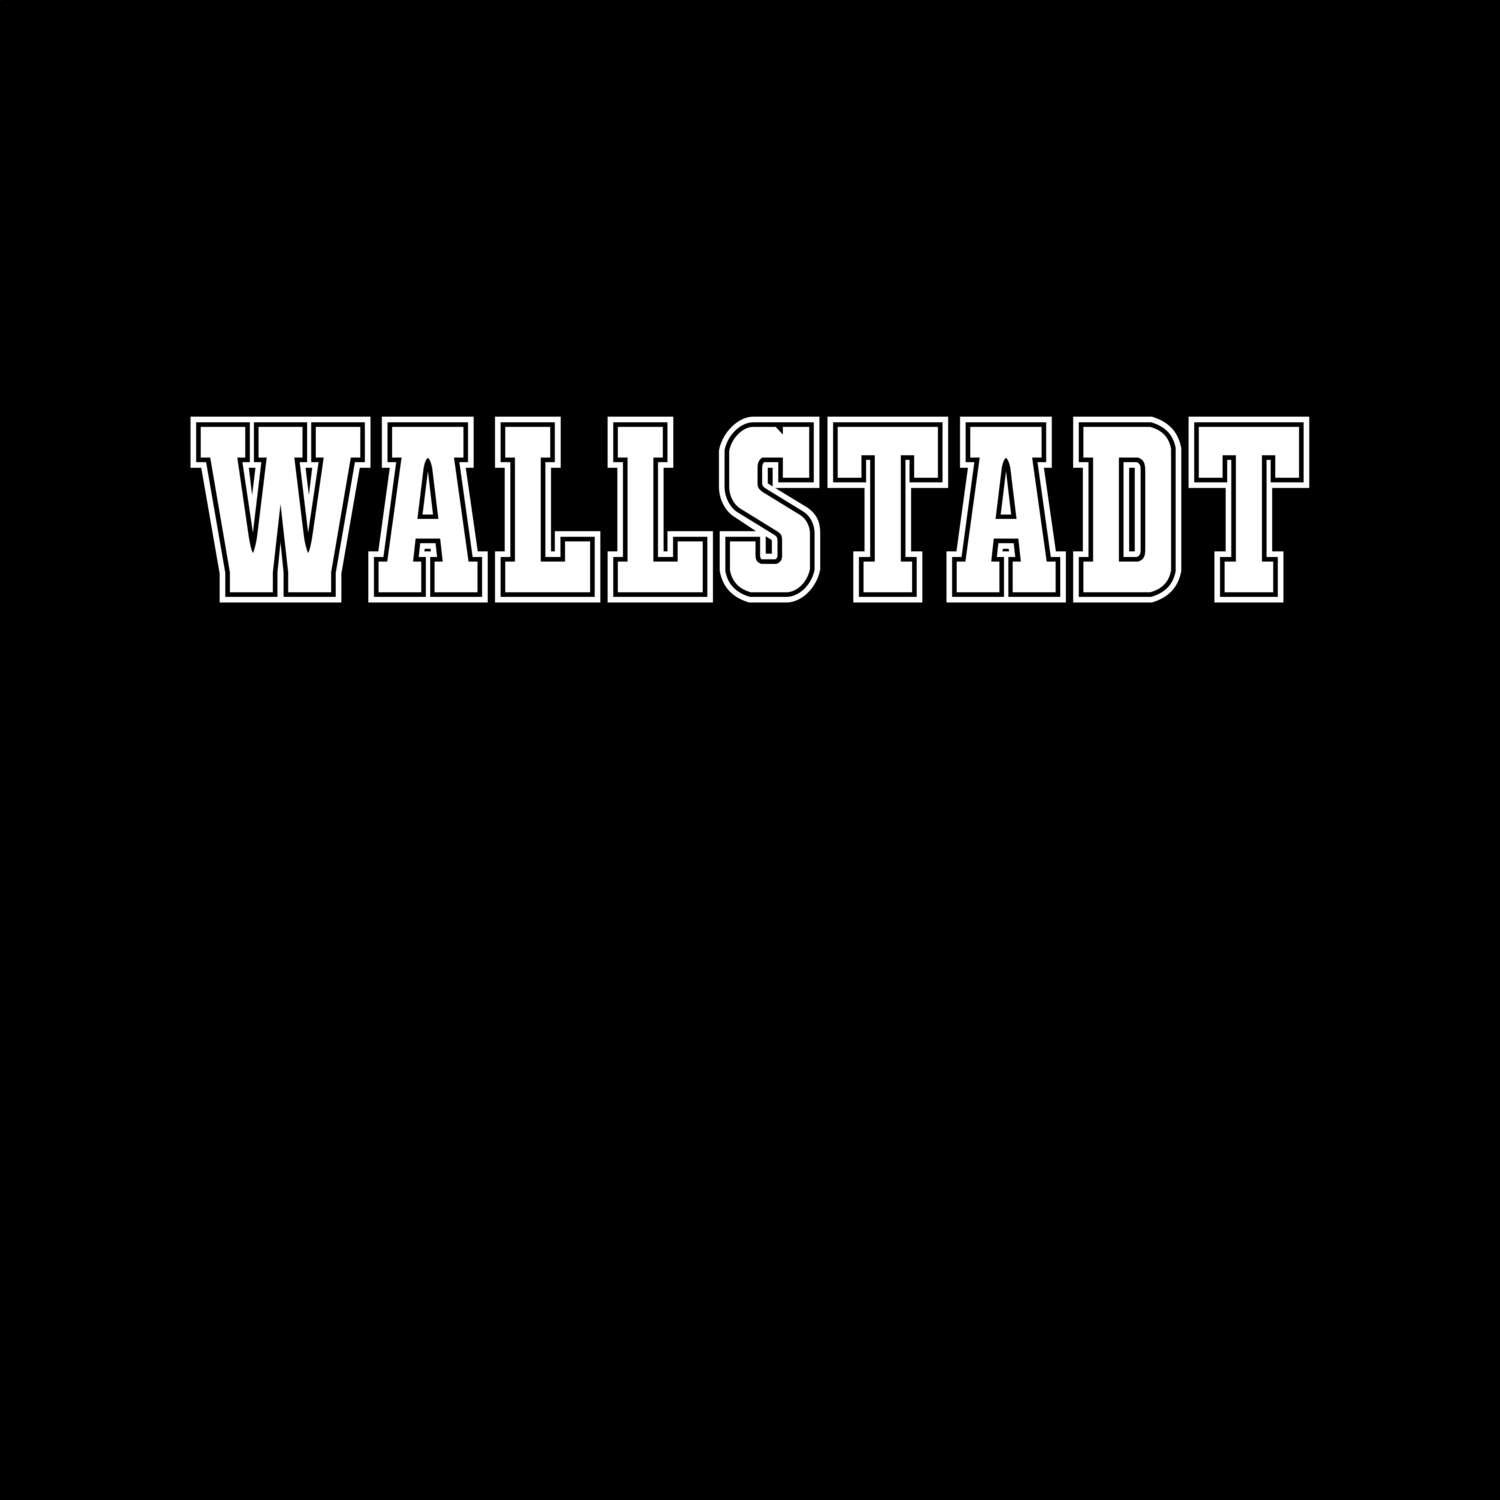 Wallstadt T-Shirt »Classic«